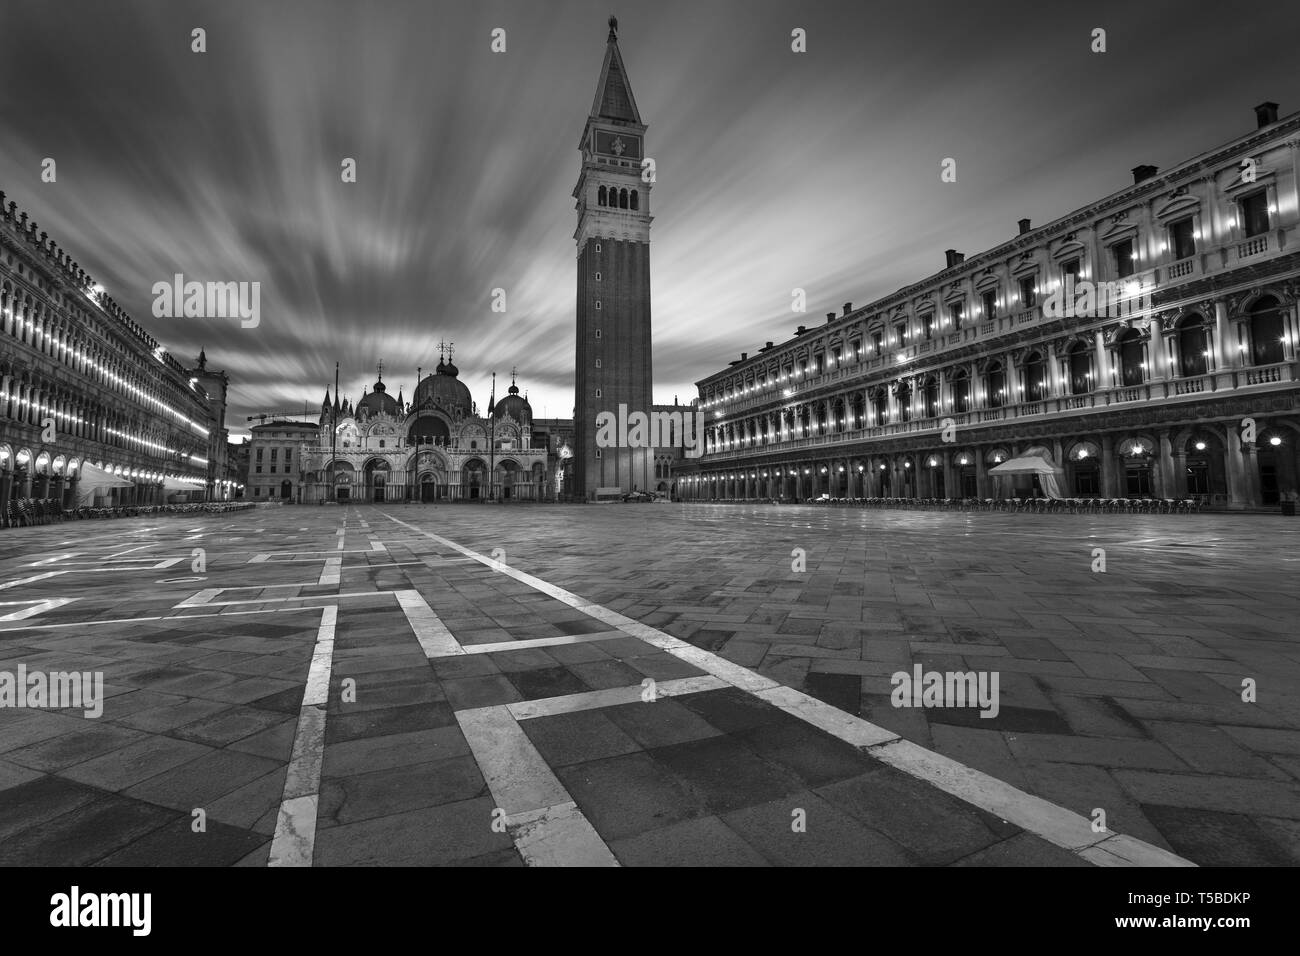 Venecia, Italia. Imagen del paisaje urbano de la plaza de San Marcos, en Venecia, Italia, durante el amanecer. Foto de stock